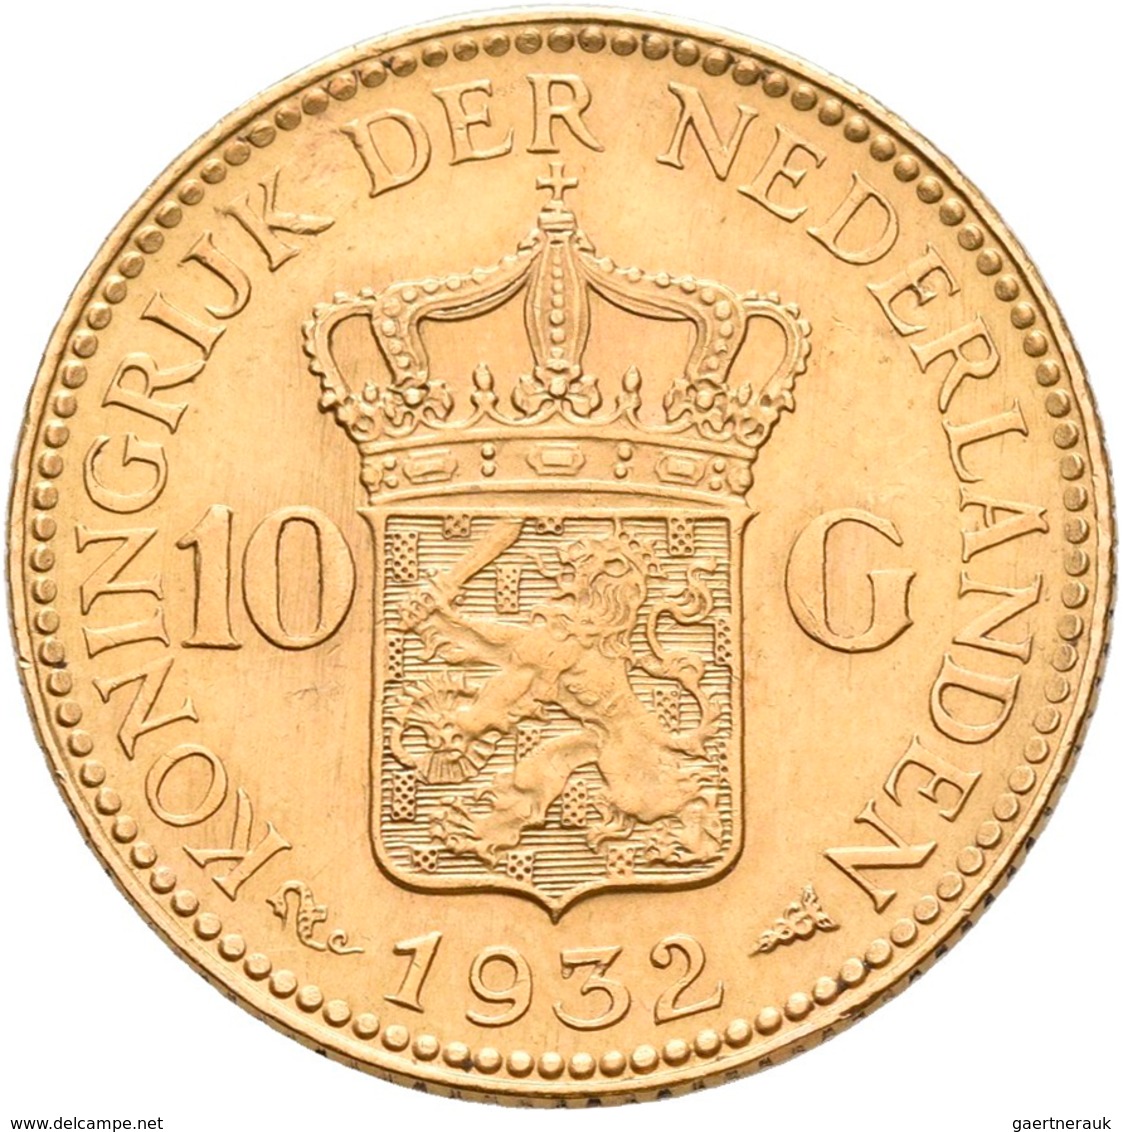 Niederlande - Anlagegold: Lot 4 Goldmünzen: 10 Gulden 1876 (2x), 1917 und 1932. Jede Münze wiegt 6,7